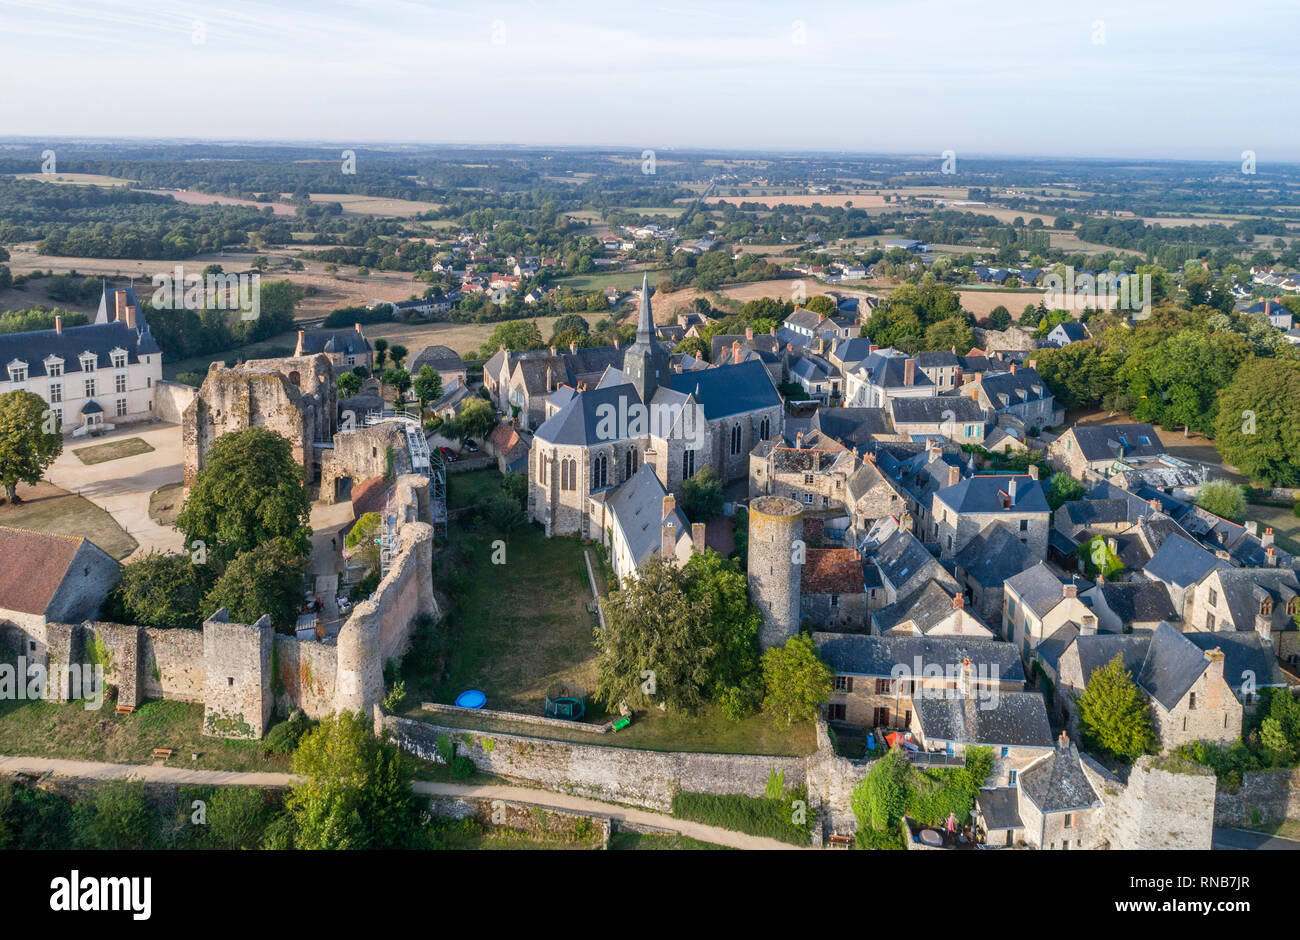 Frankreich, Mayenne, Sainte Suzanne, beschriftet Les Plus beaux villages de France (Schönste Dörfer Frankreichs), das Dorf mit Kirche und castl Stockfoto